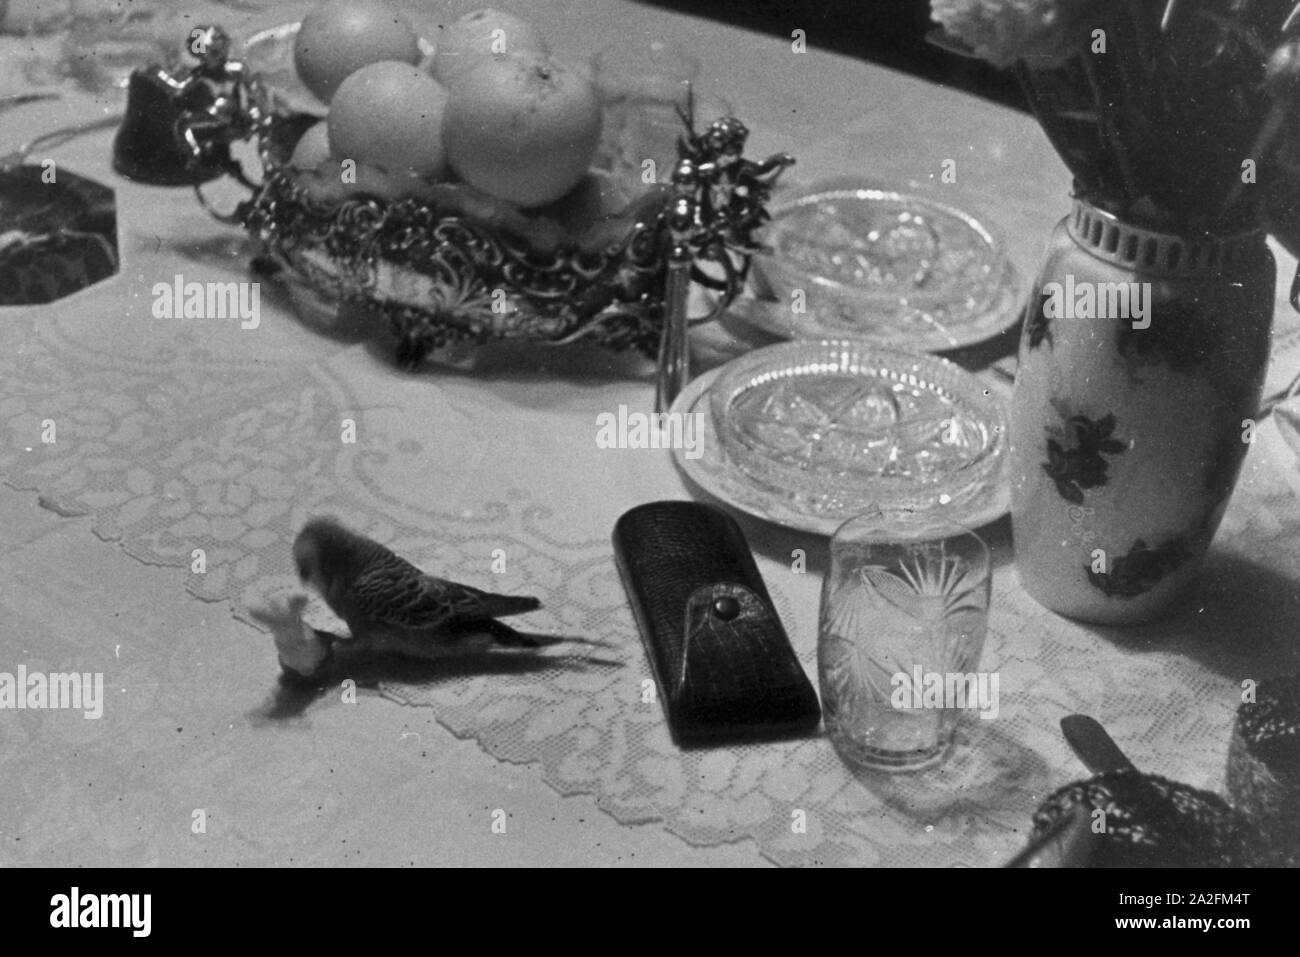 Ein Wellensittich spielt auif dem Tisch, Deutschland 1930er Jahre. A budgie playing on the table, Germany 1930s. Stock Photo